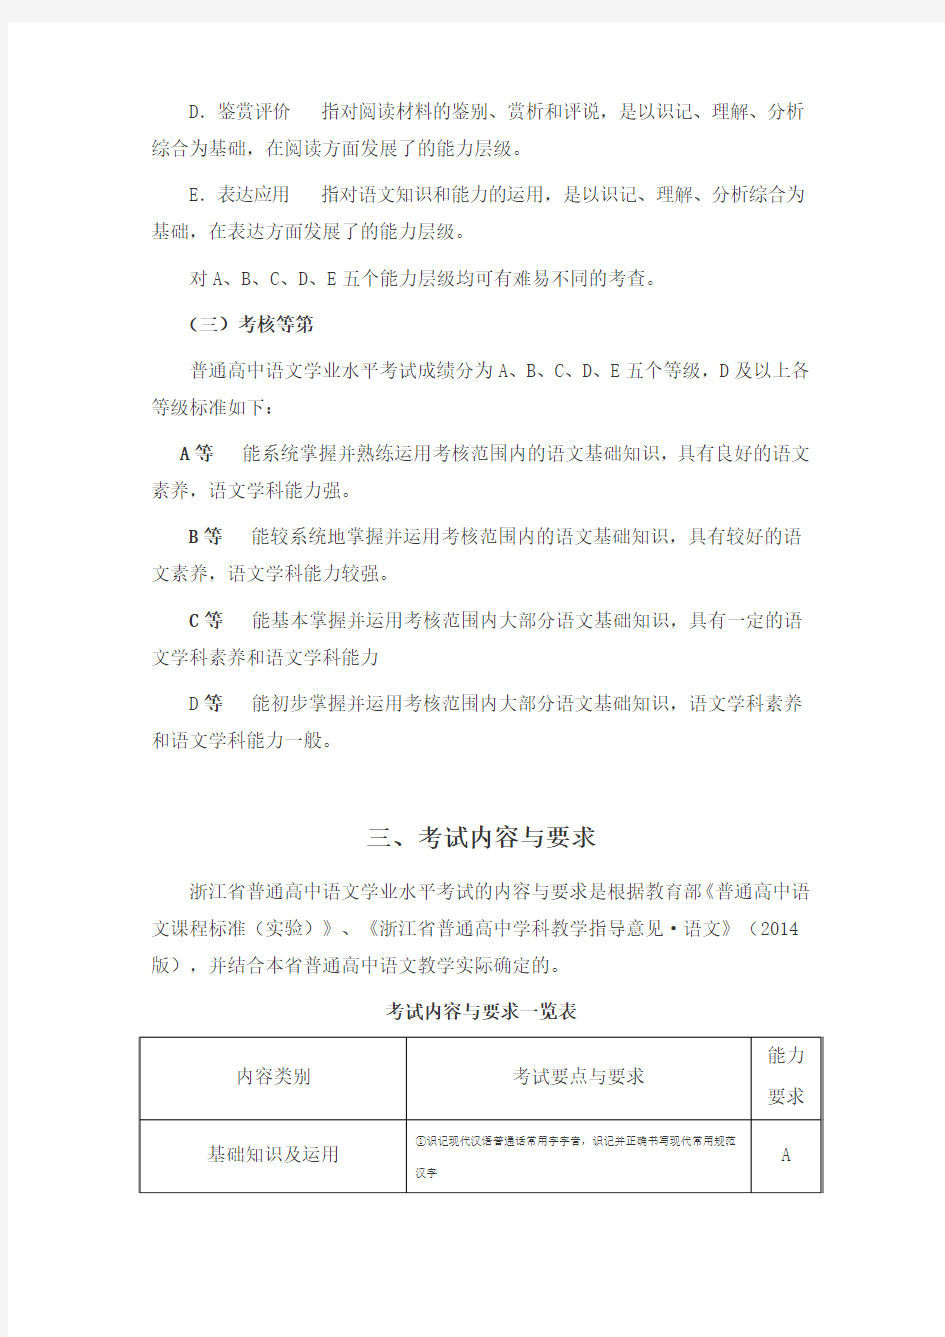 浙江省普通高中学业水平考试标准(适用于2014级学生) (1)